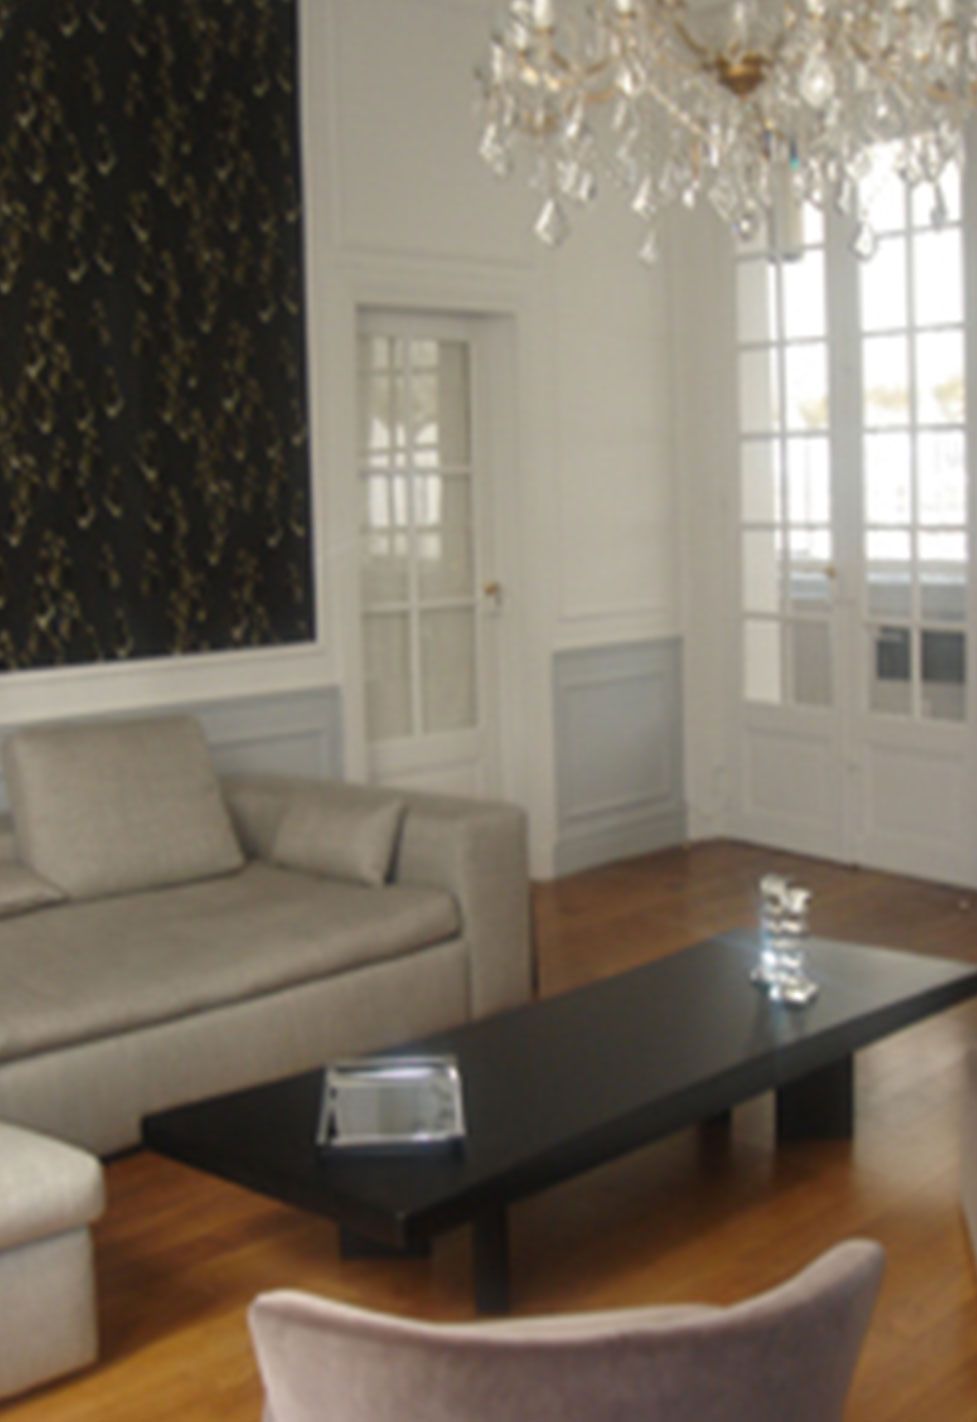 Salon d'un appartement ancien à Paris 6ème. Réalisation ID Interior Design par Anne-Laure Ferry-Adam, architecte d'intérieur à Genève.